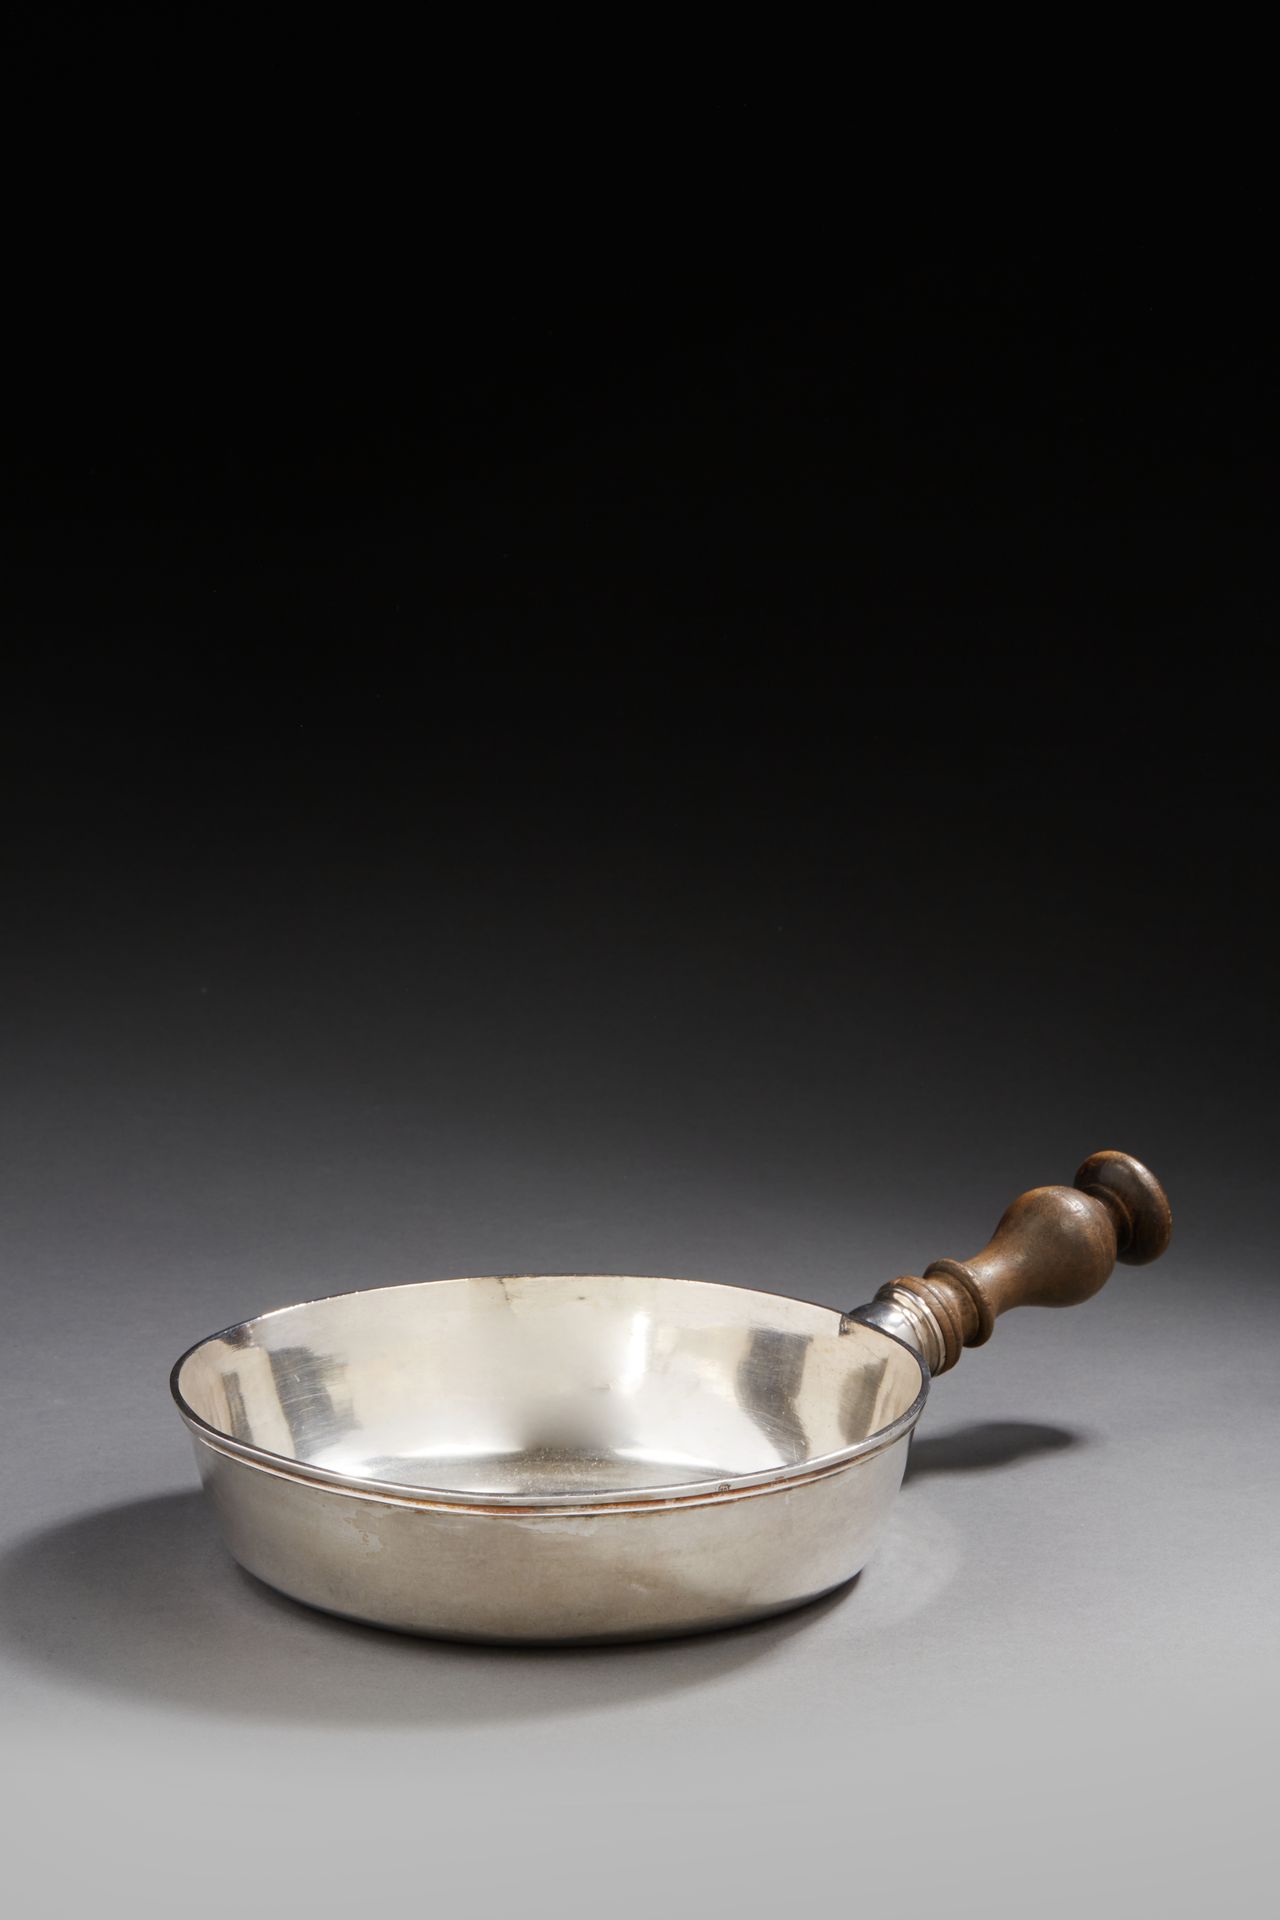 Null 1777年MONTPELLIER
普通的银质煎锅，边缘坚固，翻转的木质手柄拧在锅盖上。背面刻有旧时的重量：3马克、3盎司、12格令和首字母MM。
银器&hellip;